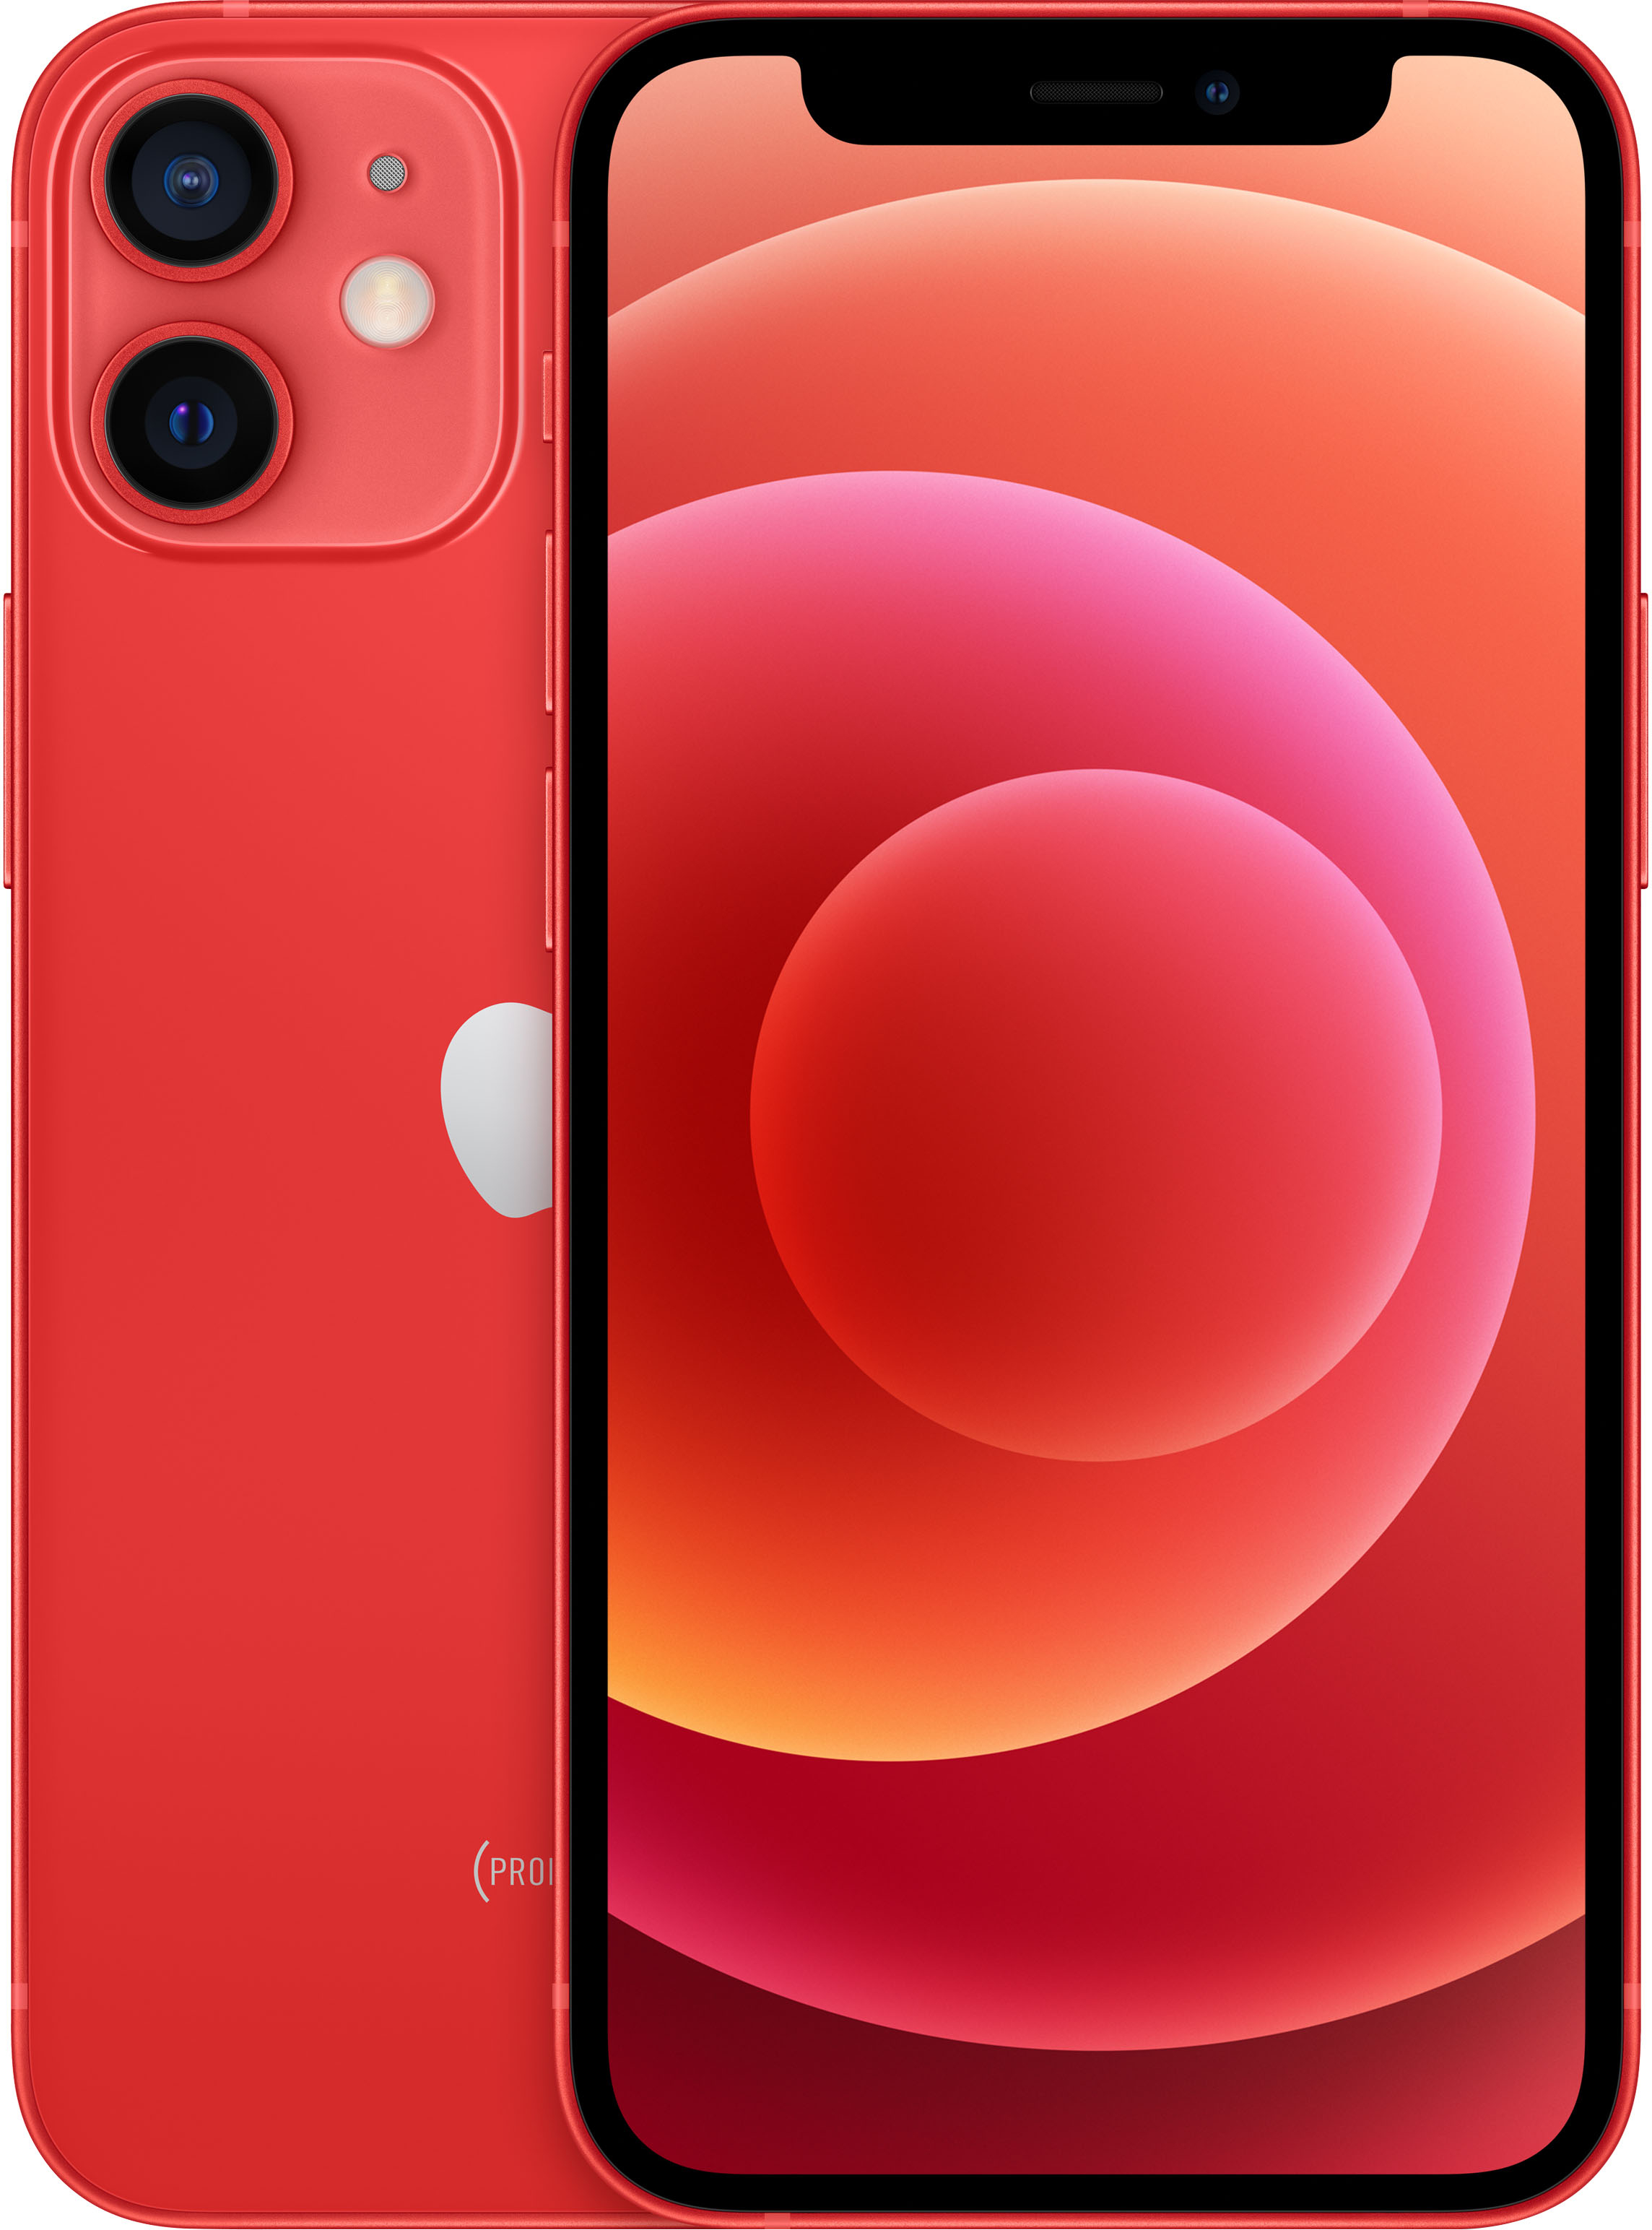 Total Wireless - Apple iPhone 12 Mini 64GB Prepaid - Red